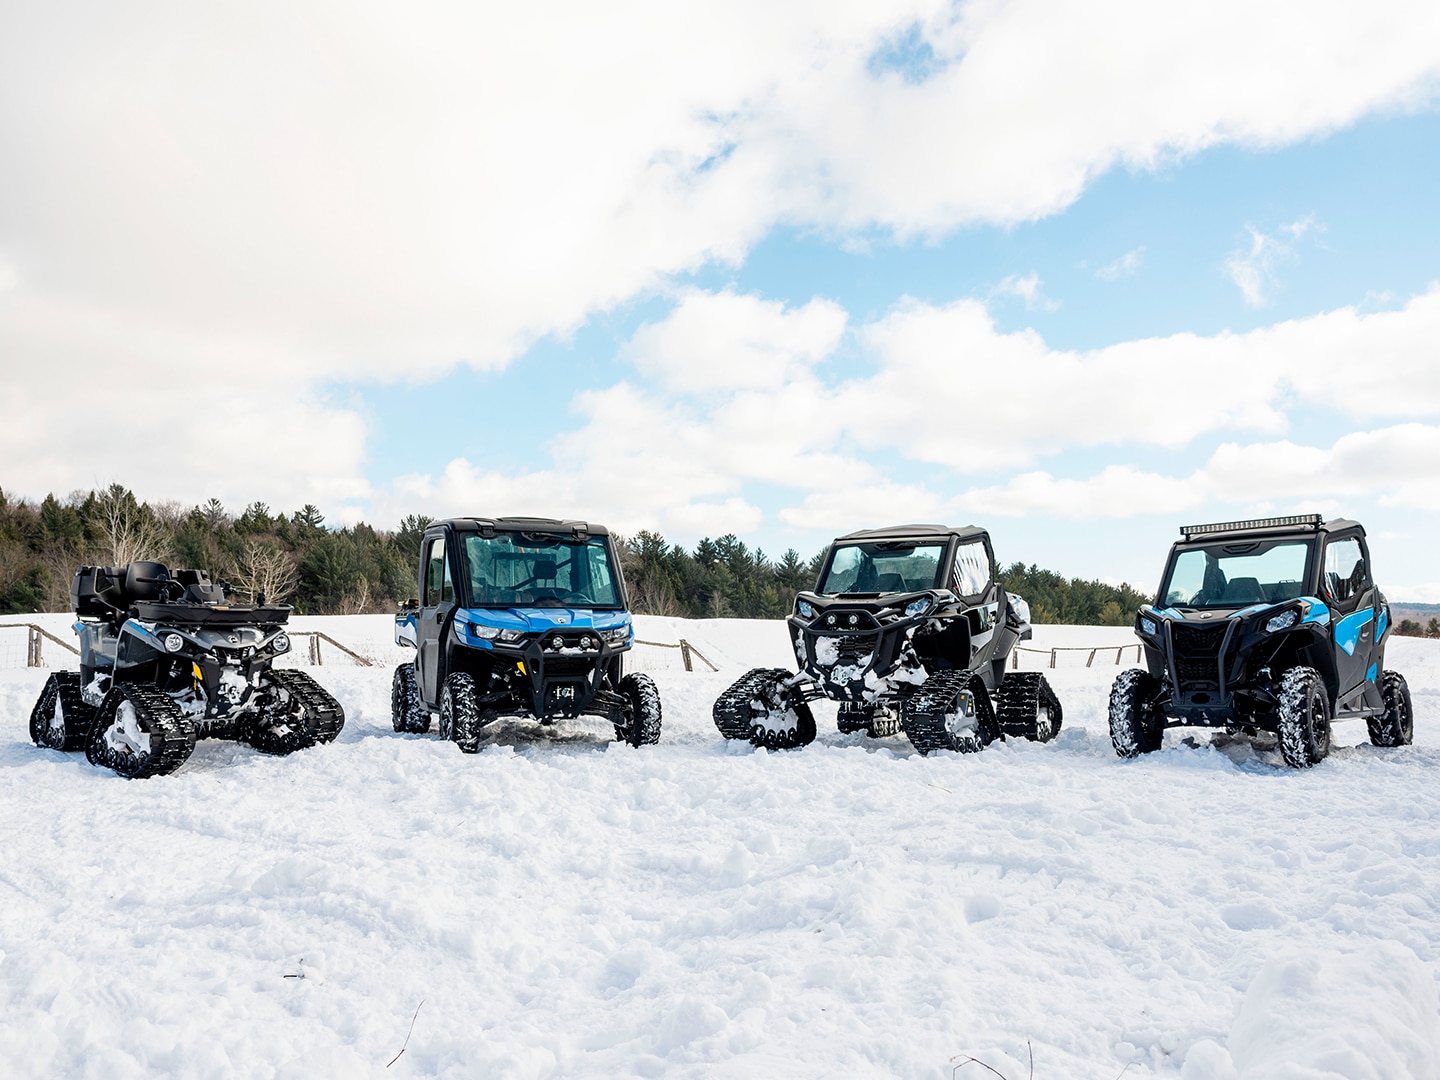 Pojazdy Can-Am stoją na śniegu